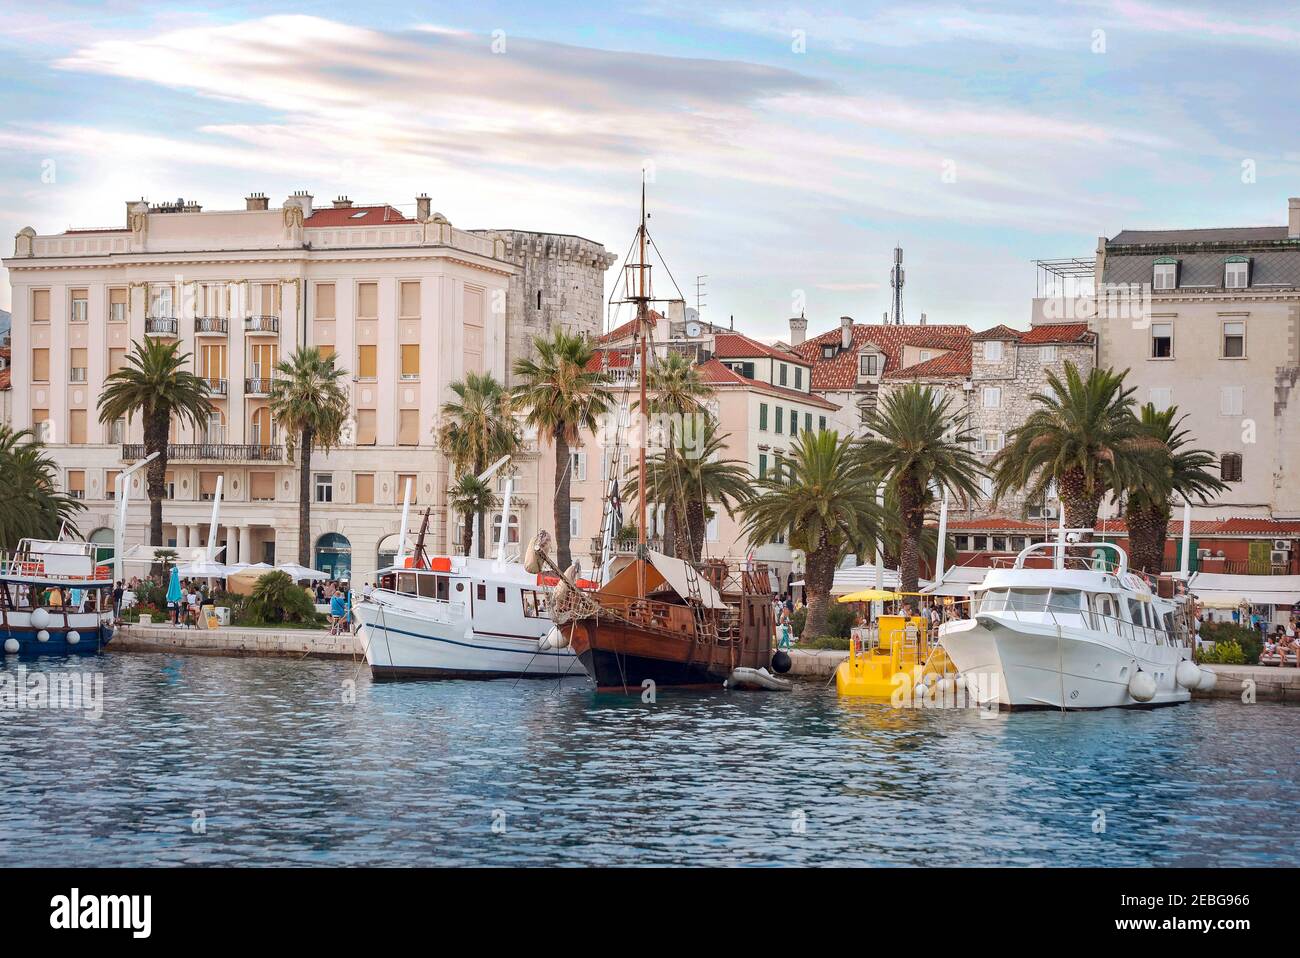 Vue sur le port et la ville, Split, Croatie Banque D'Images